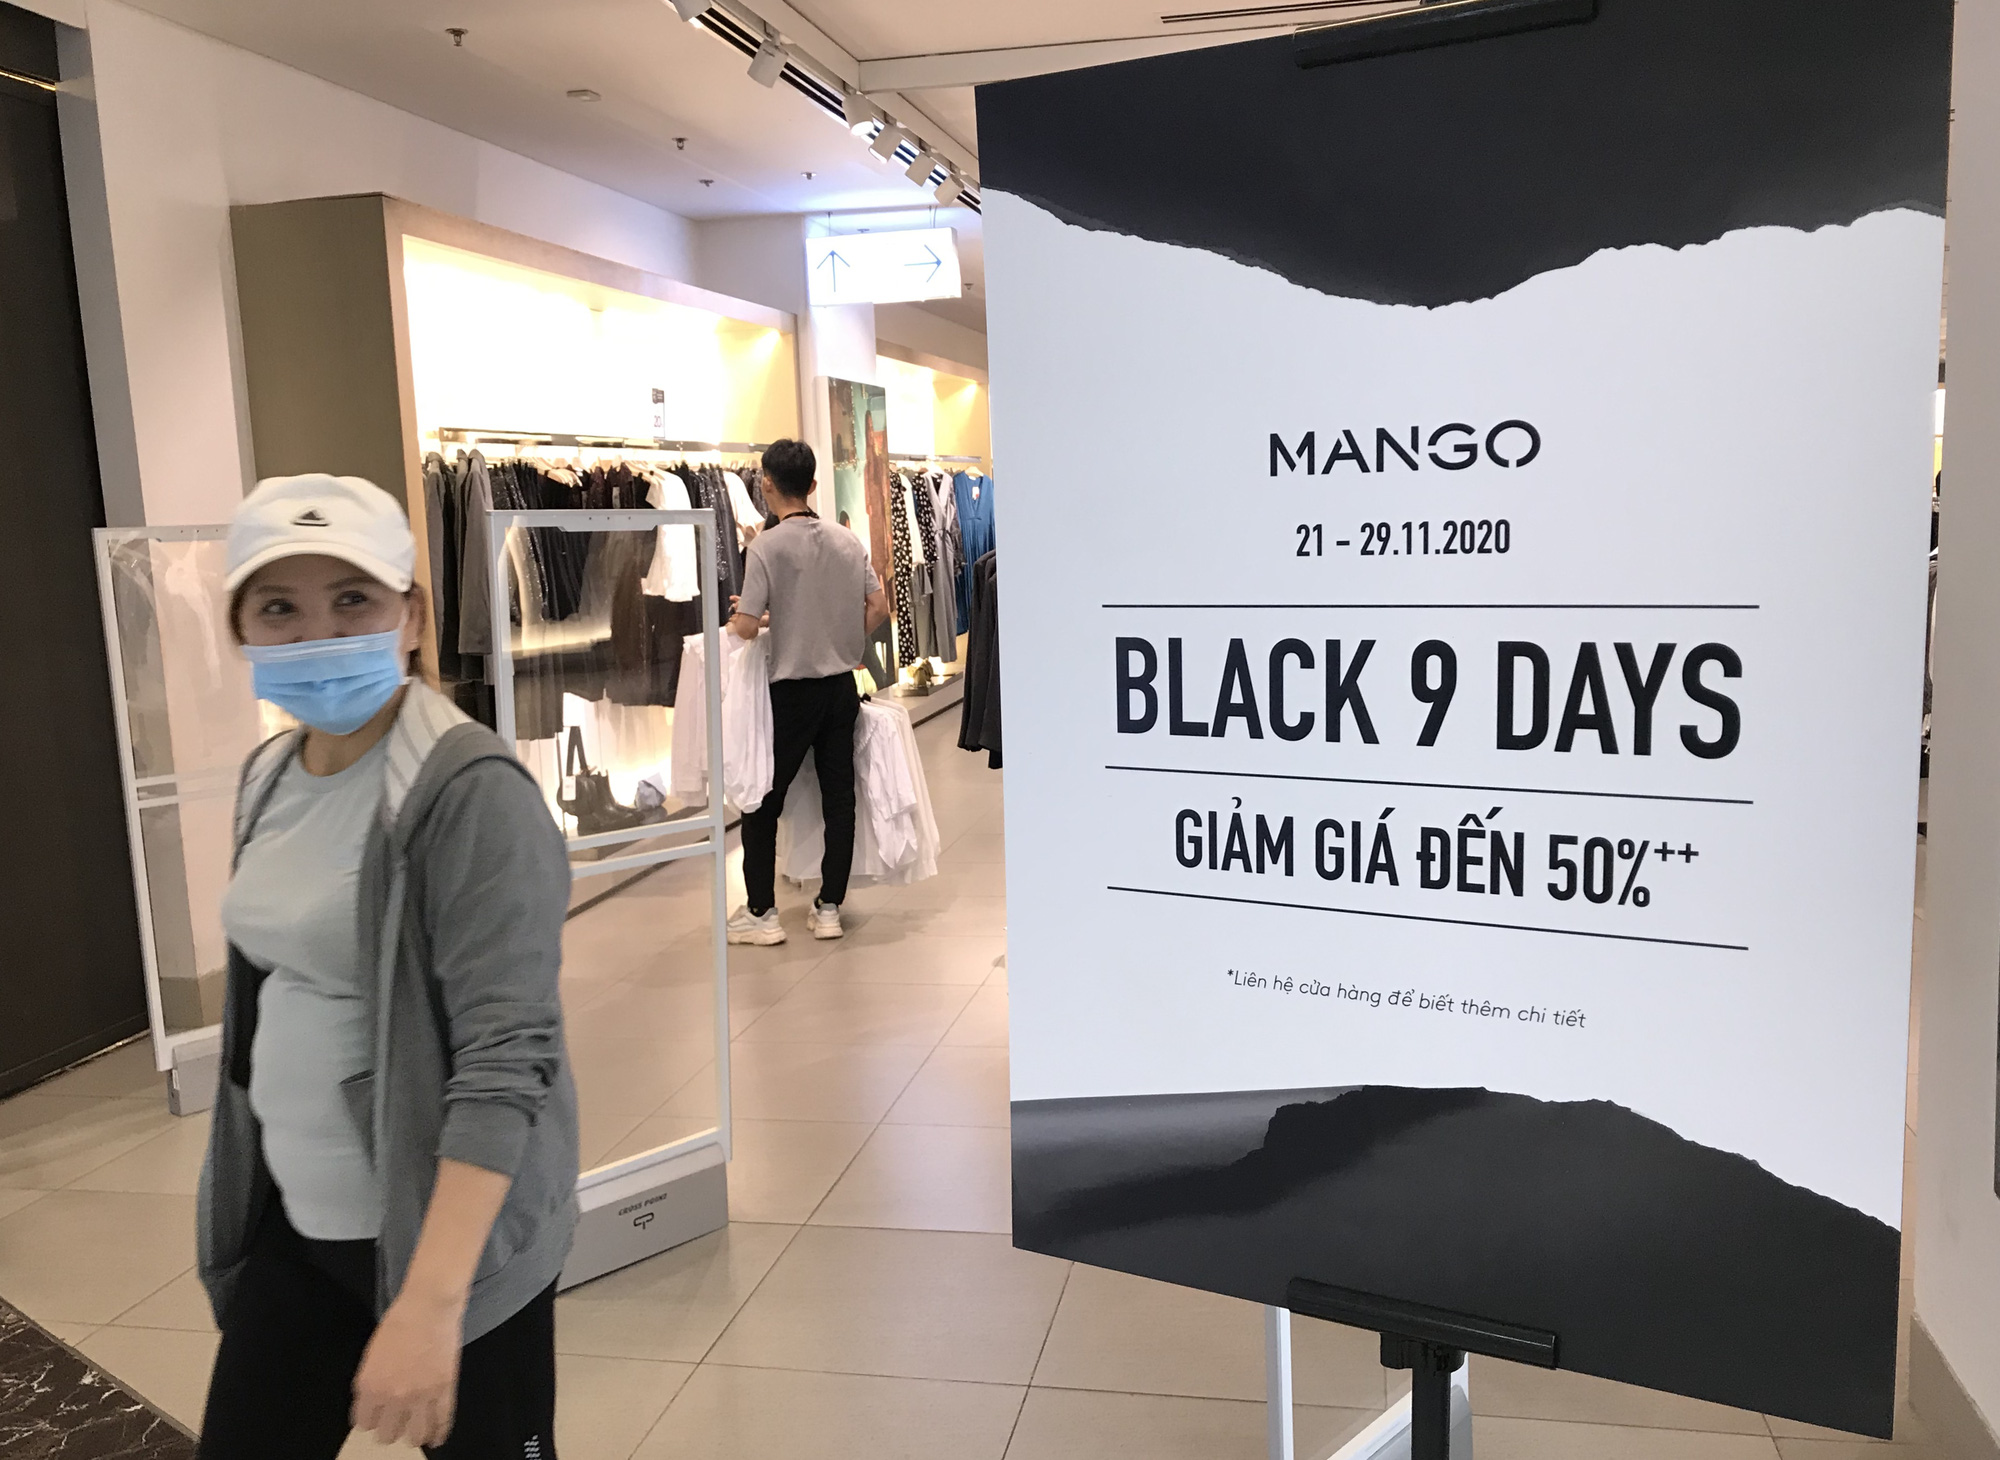 Black Friday: Hàng hiệu Sài Gòn bắt đầu giảm sốc 70%, có trung tâm thương mại tuyên bố mở cửa đến nửa đêm - Ảnh 4.